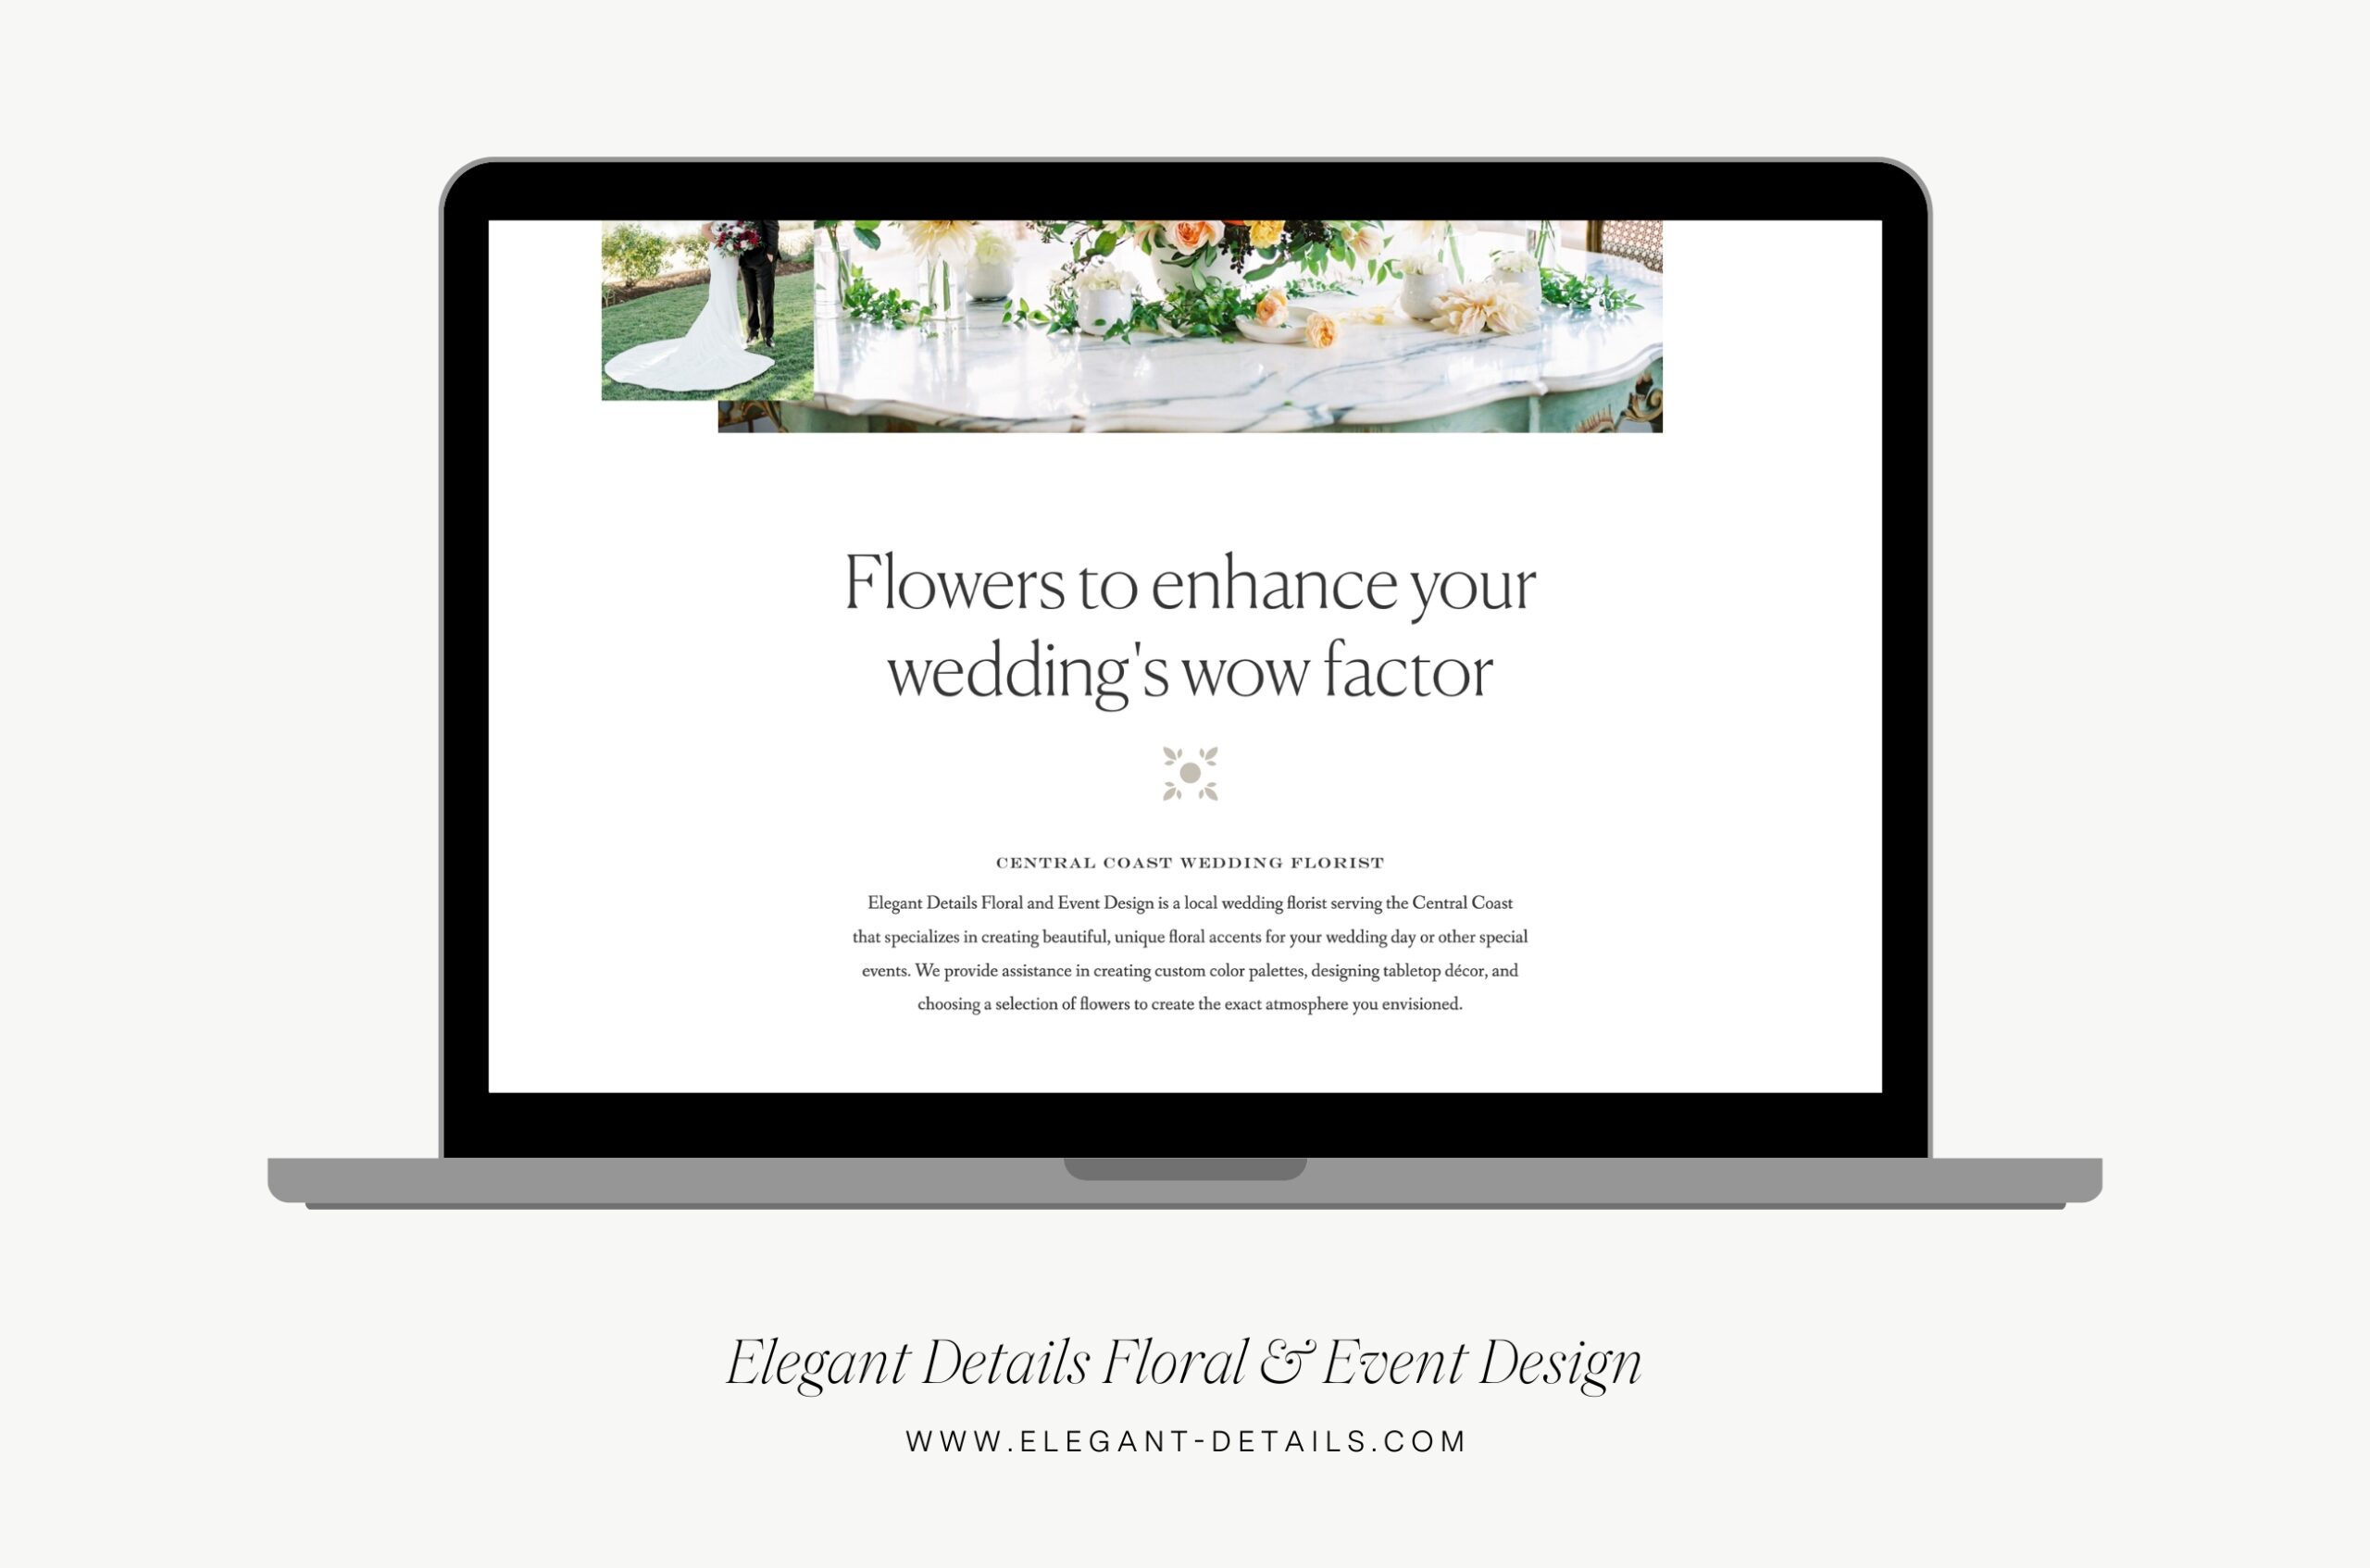 Elegant Details Floral Design Home Page
